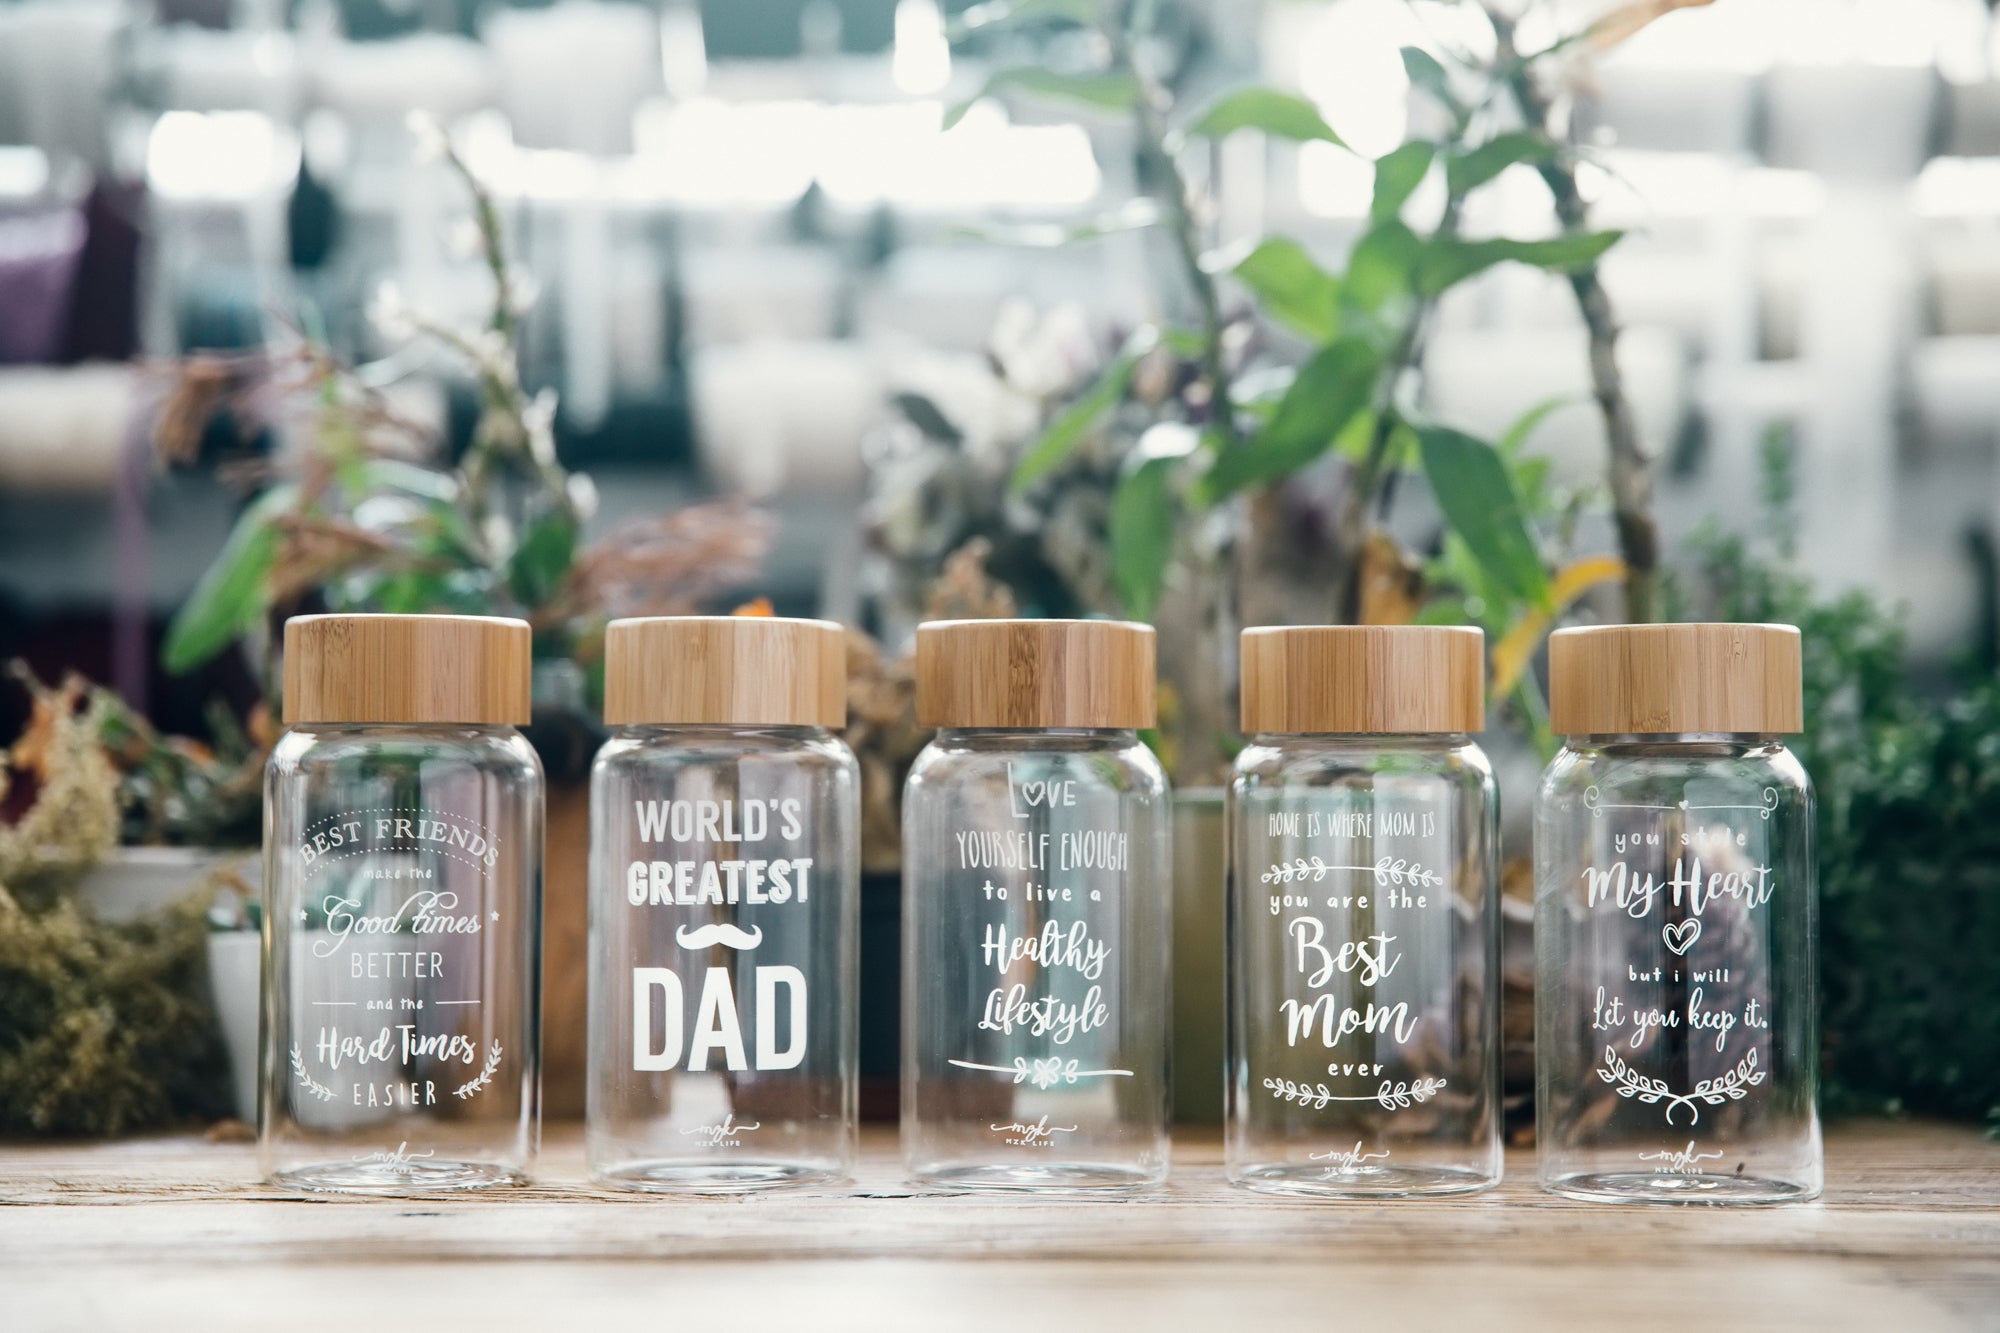 爸爸好瓶 Design Bottle #Dad（贈品）